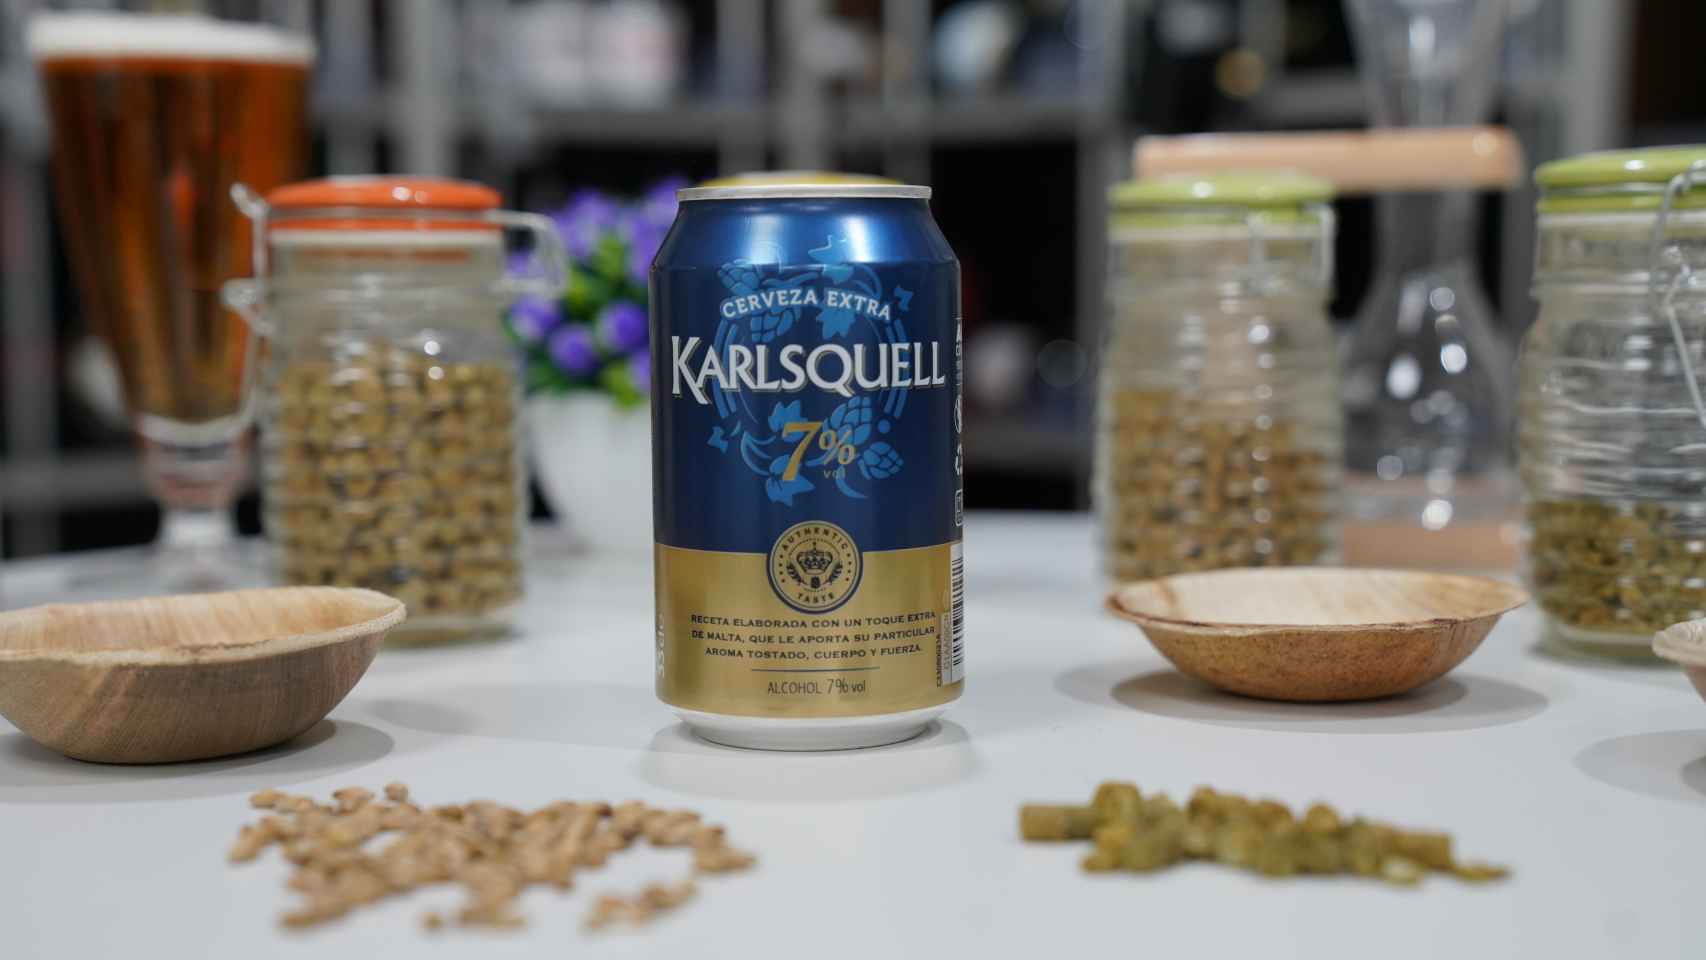 La lata de cerveza de Karlsquell con extra de malta, la marca blanca de Aldi.